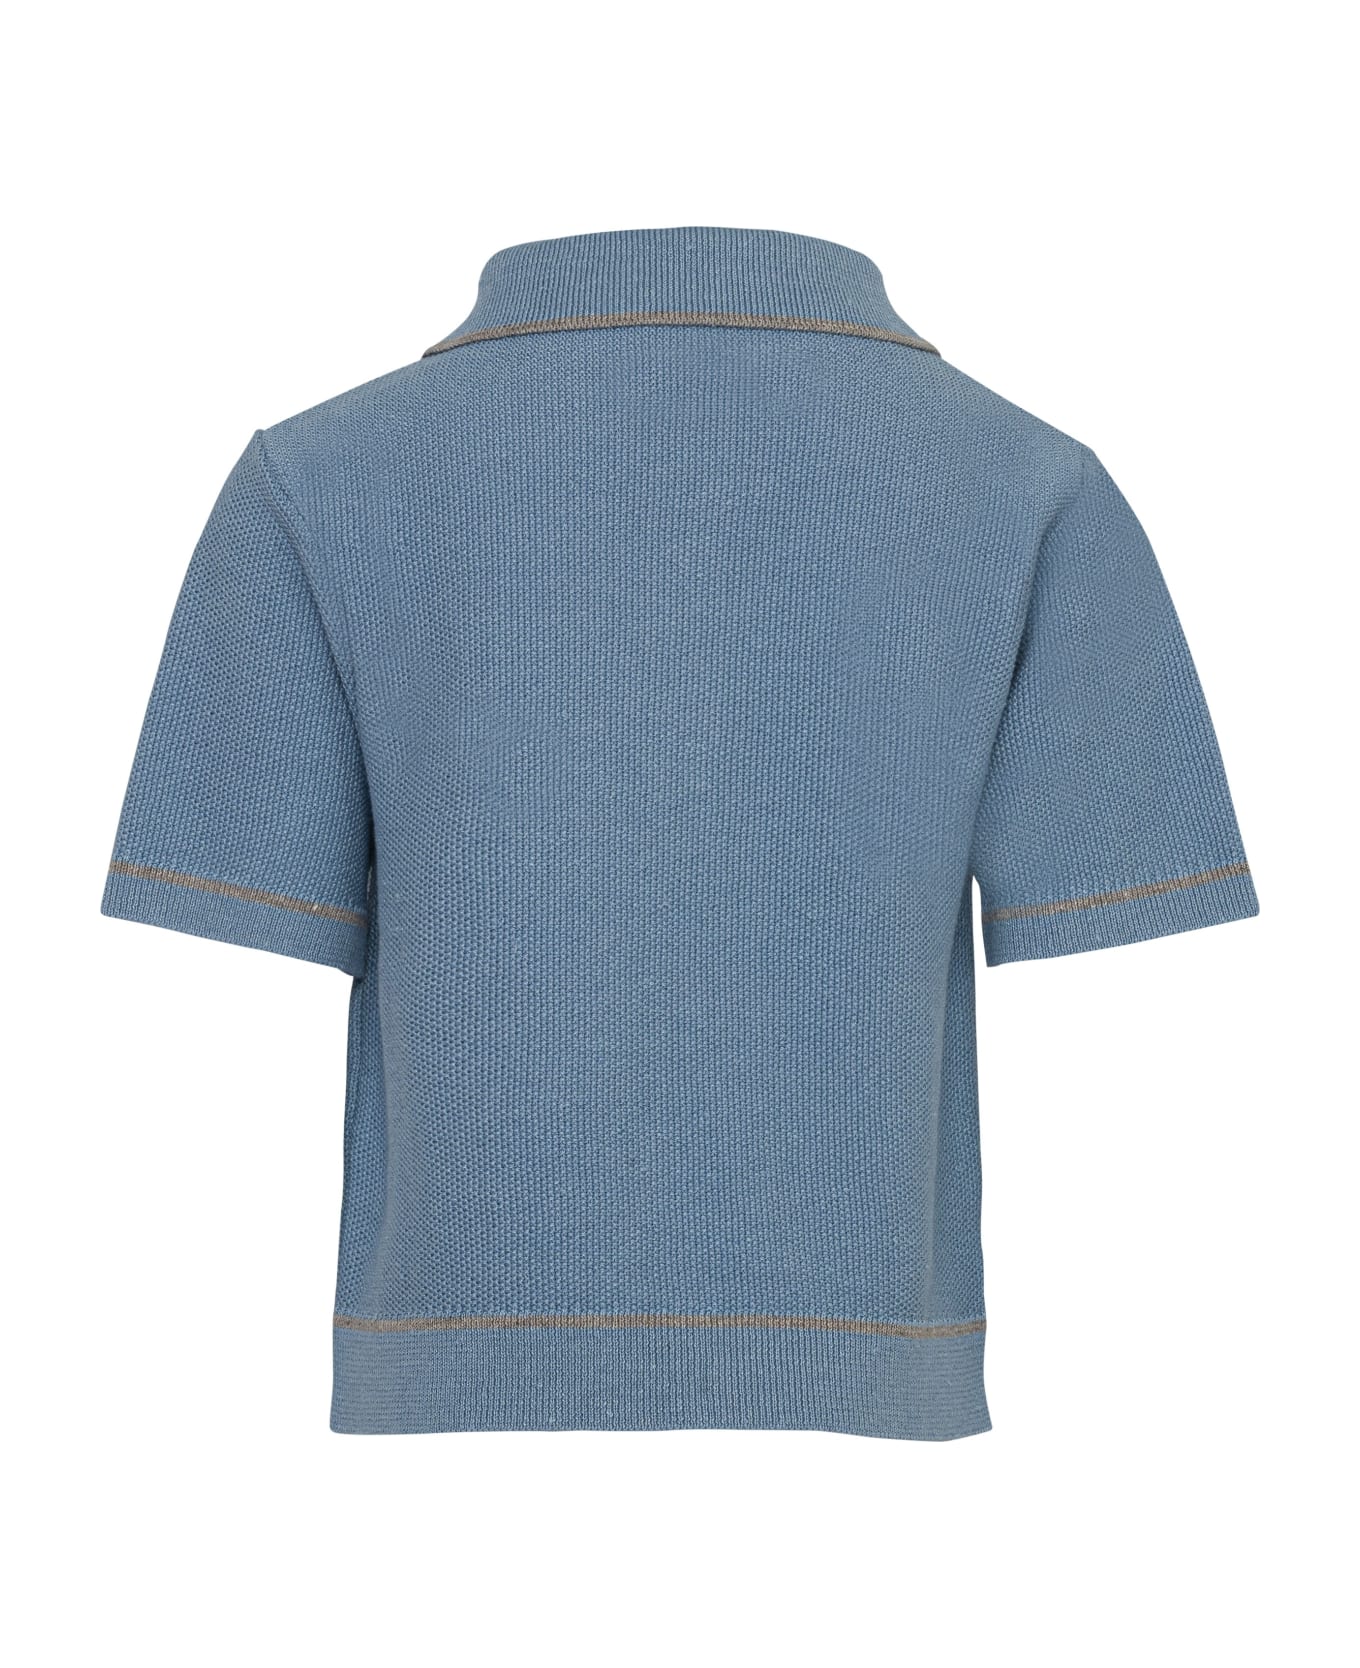 Eleventy Polo Shirt - Light blue